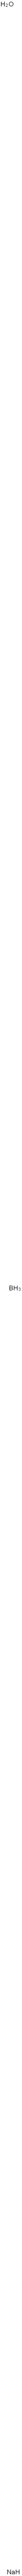 Boron sodium oxide (B3NaO5) Struktur